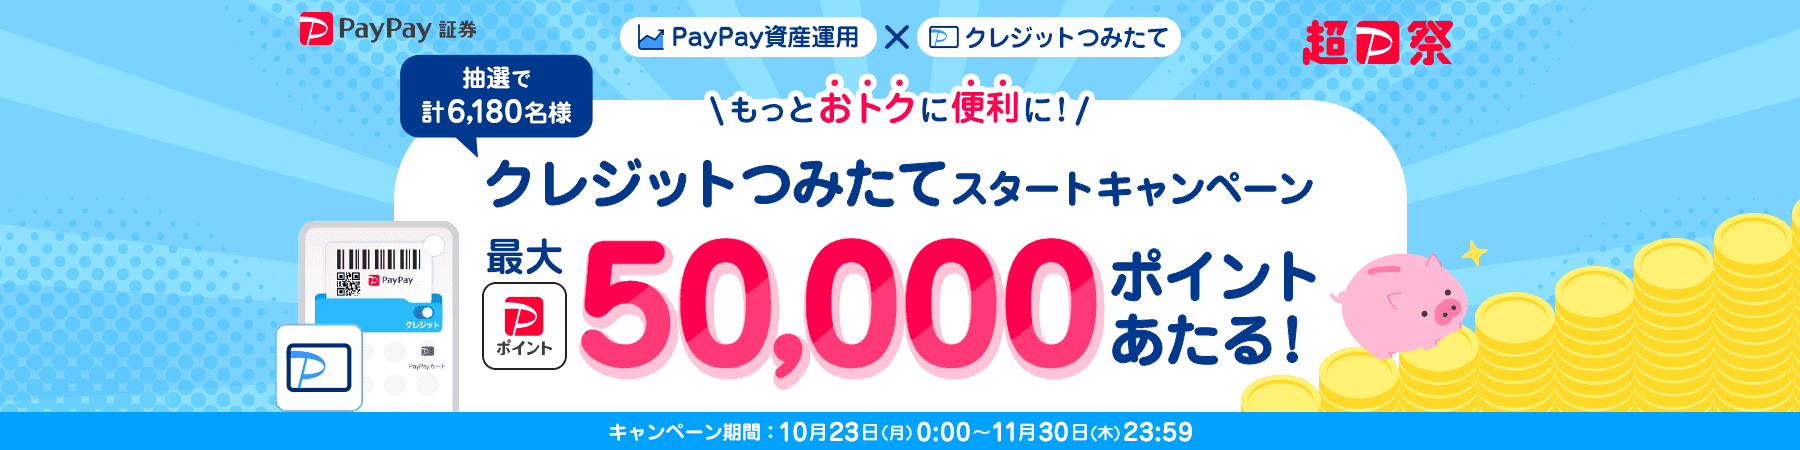 PayPay証券 超PayPay祭 PayPay資産運用×クレジットつみたて もっとおトクに便利に！クレジットつみたてスタートキャンペーン 抽選で計6,180名様に最大PayPayポイント50,000ポイントあたる！ キャンペーン期間：10月23日(月)0:00〜11月30日(木)23:59